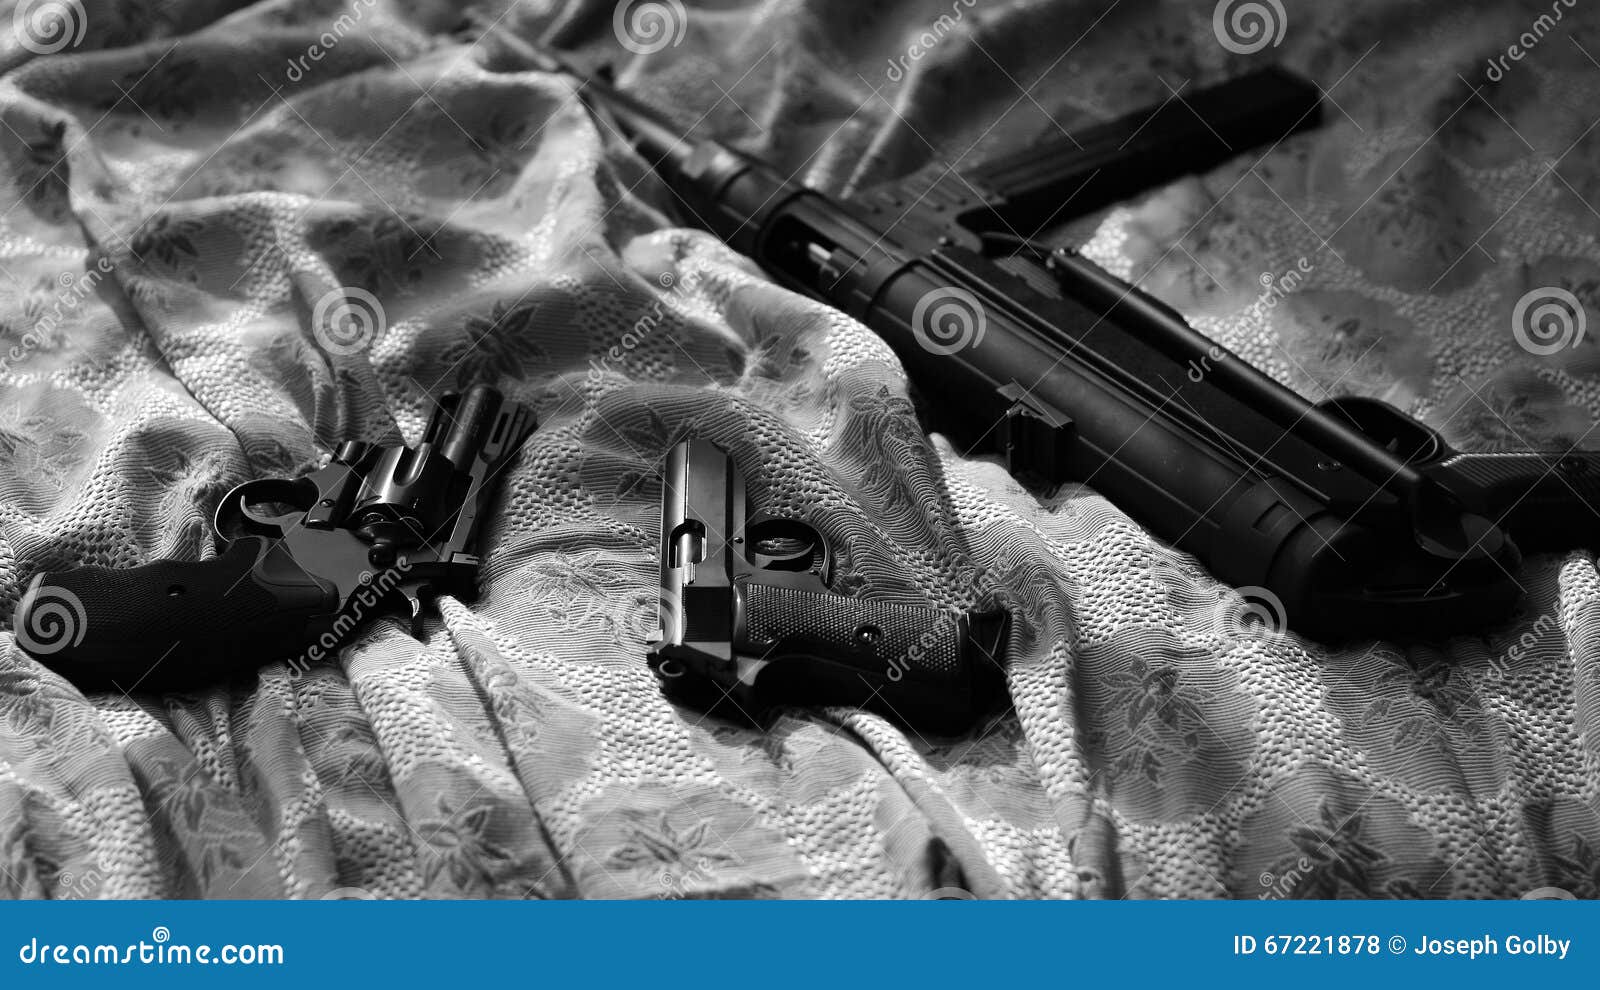 guns on bed sheet. film noir style. revolver, pistol, machine gun.